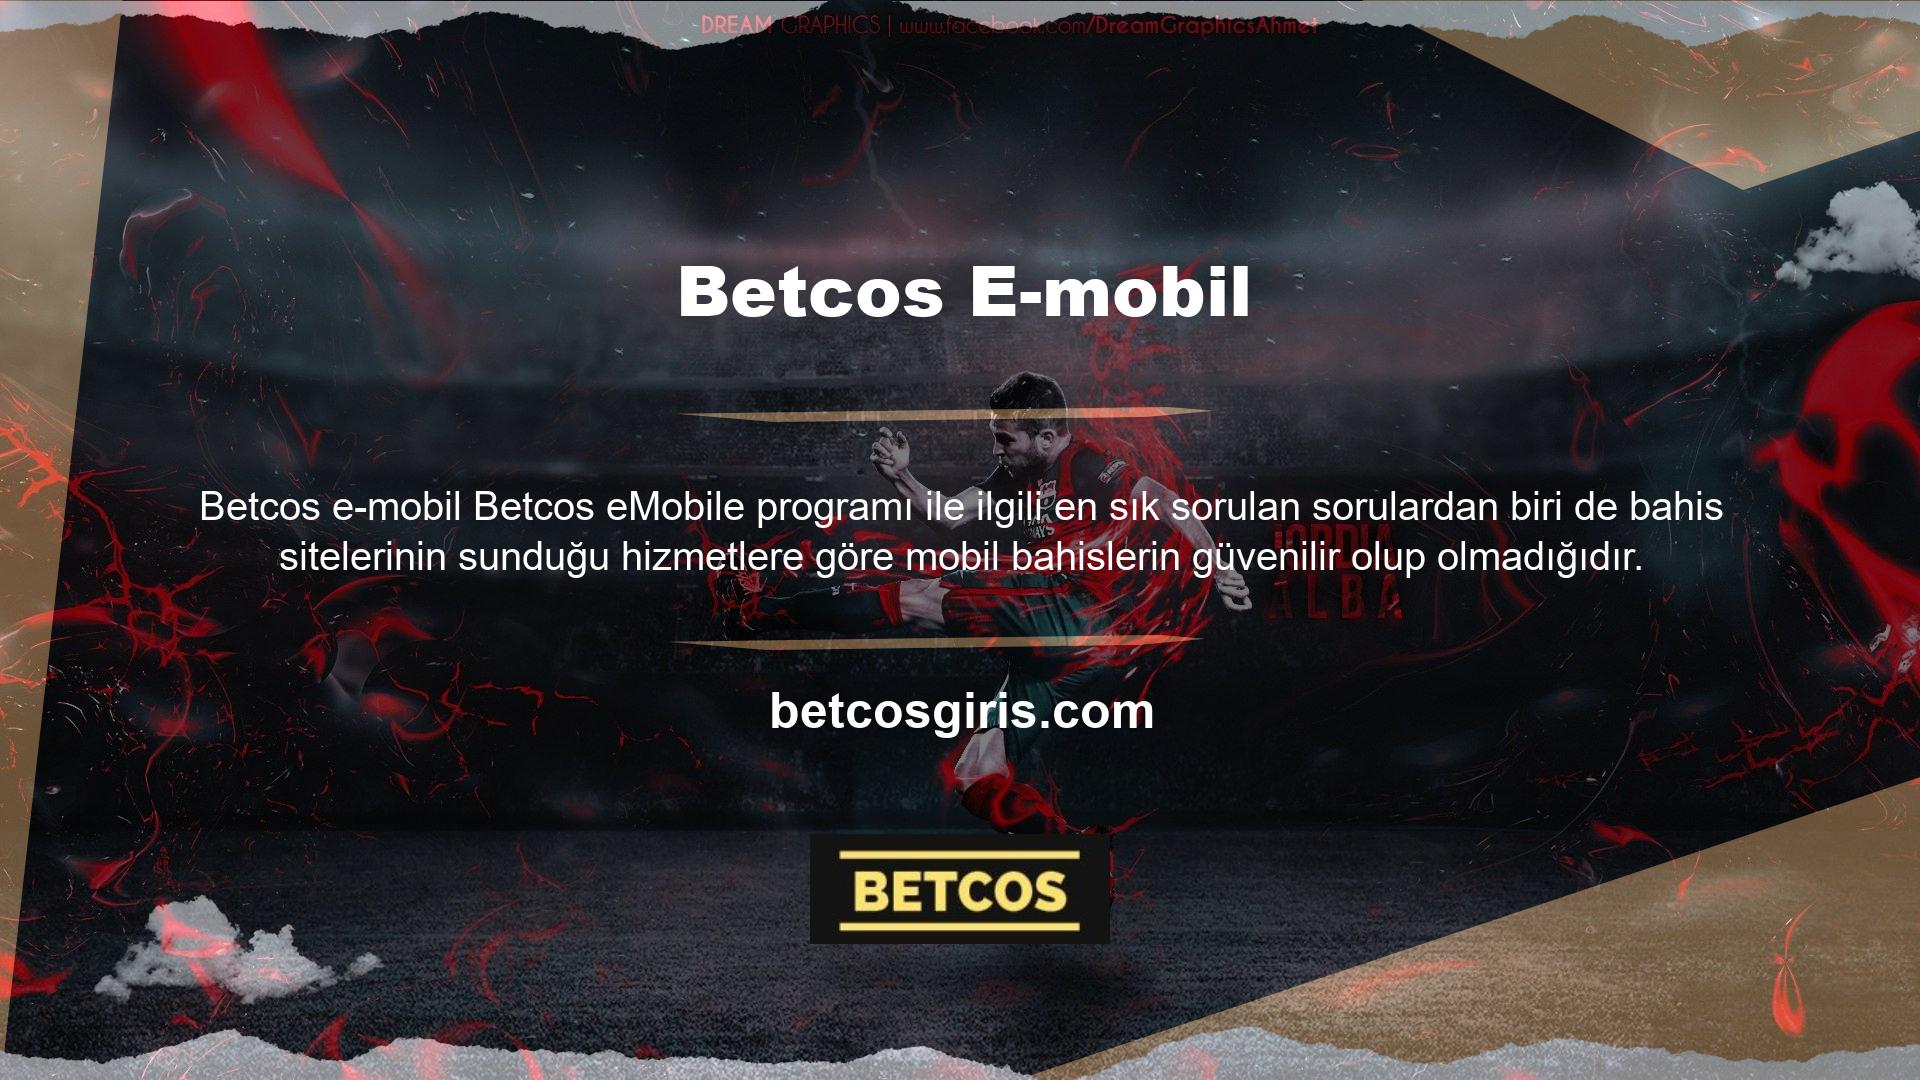 Betcos mobil platformu, normal bir web sitesi kadar kararlı ve güçlüdür